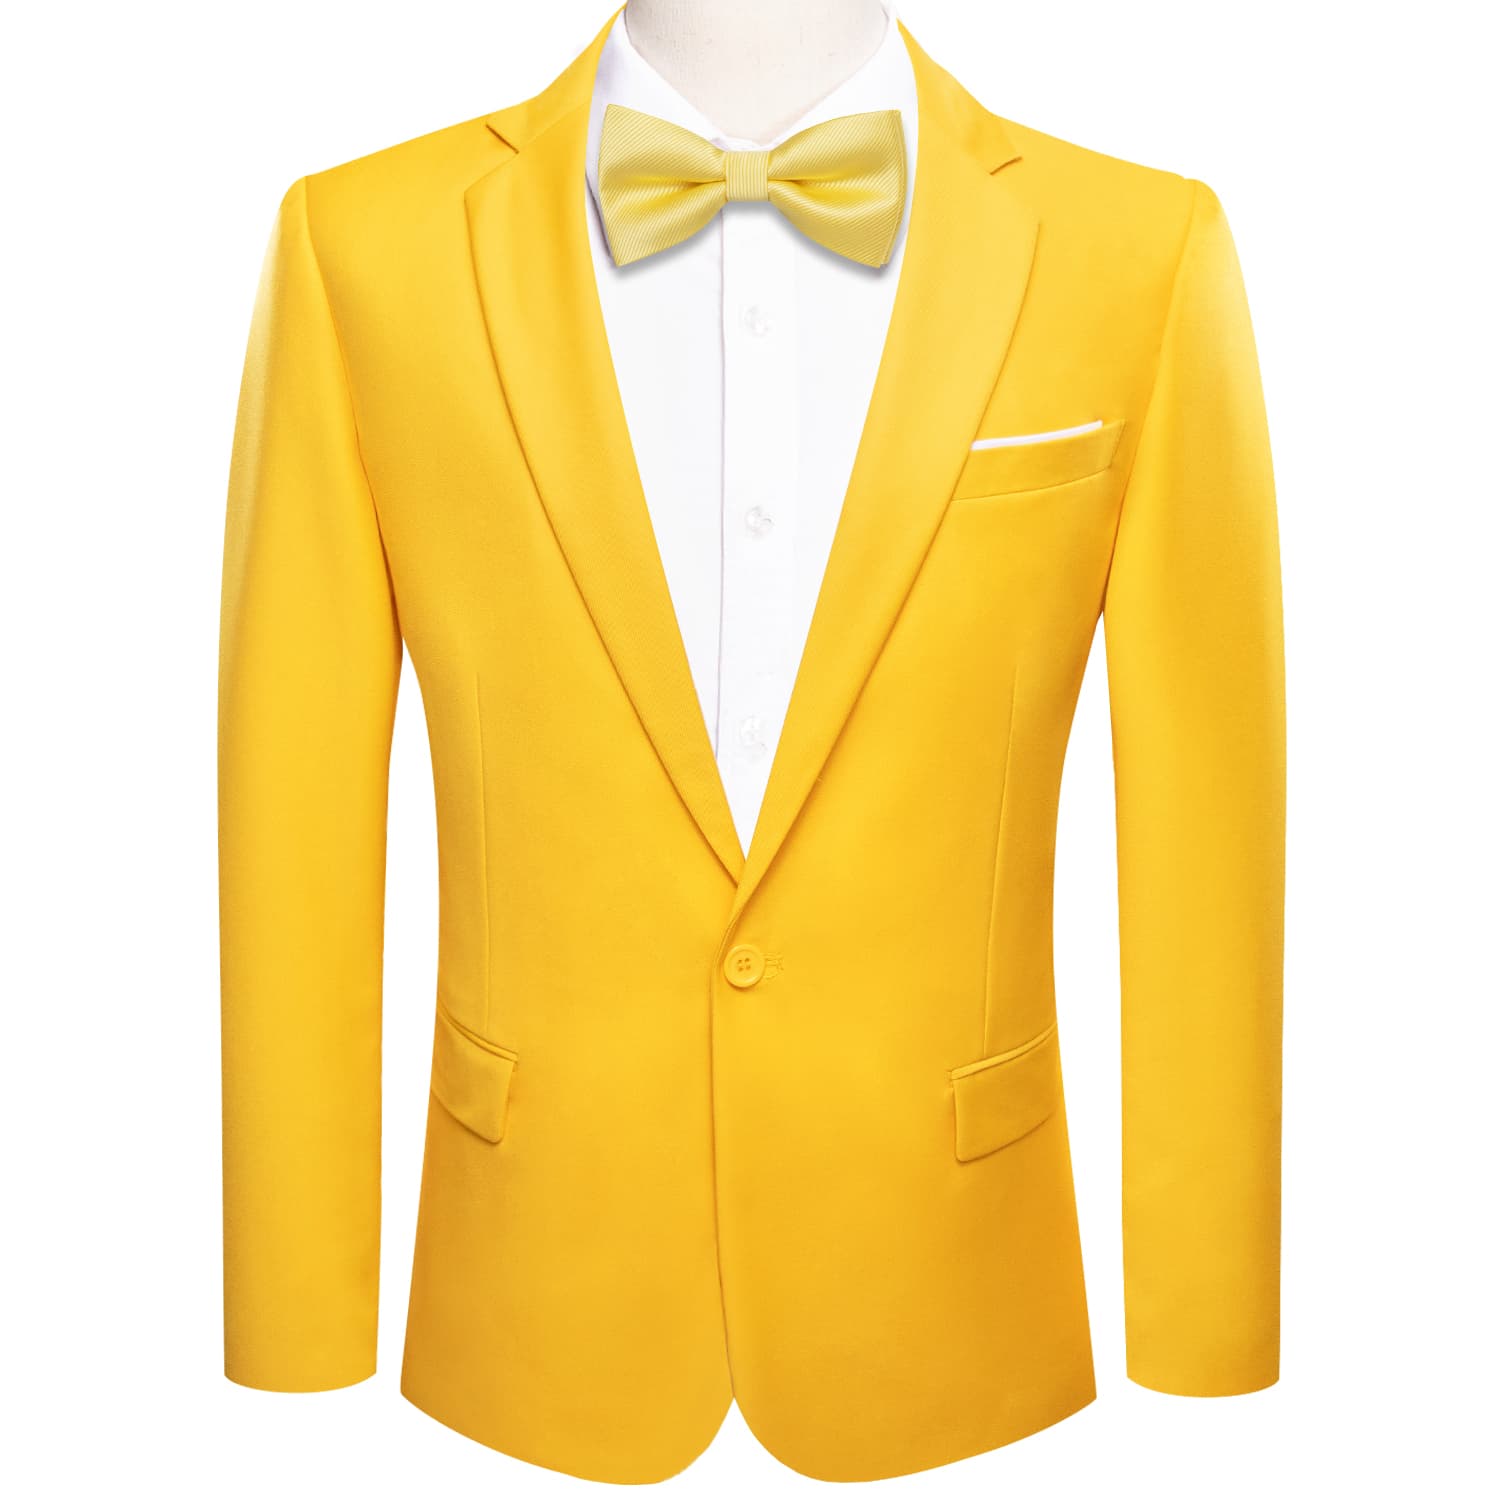 Hi-Tie Blazer Gold Men's Wedding Business Solid Top Men Suit